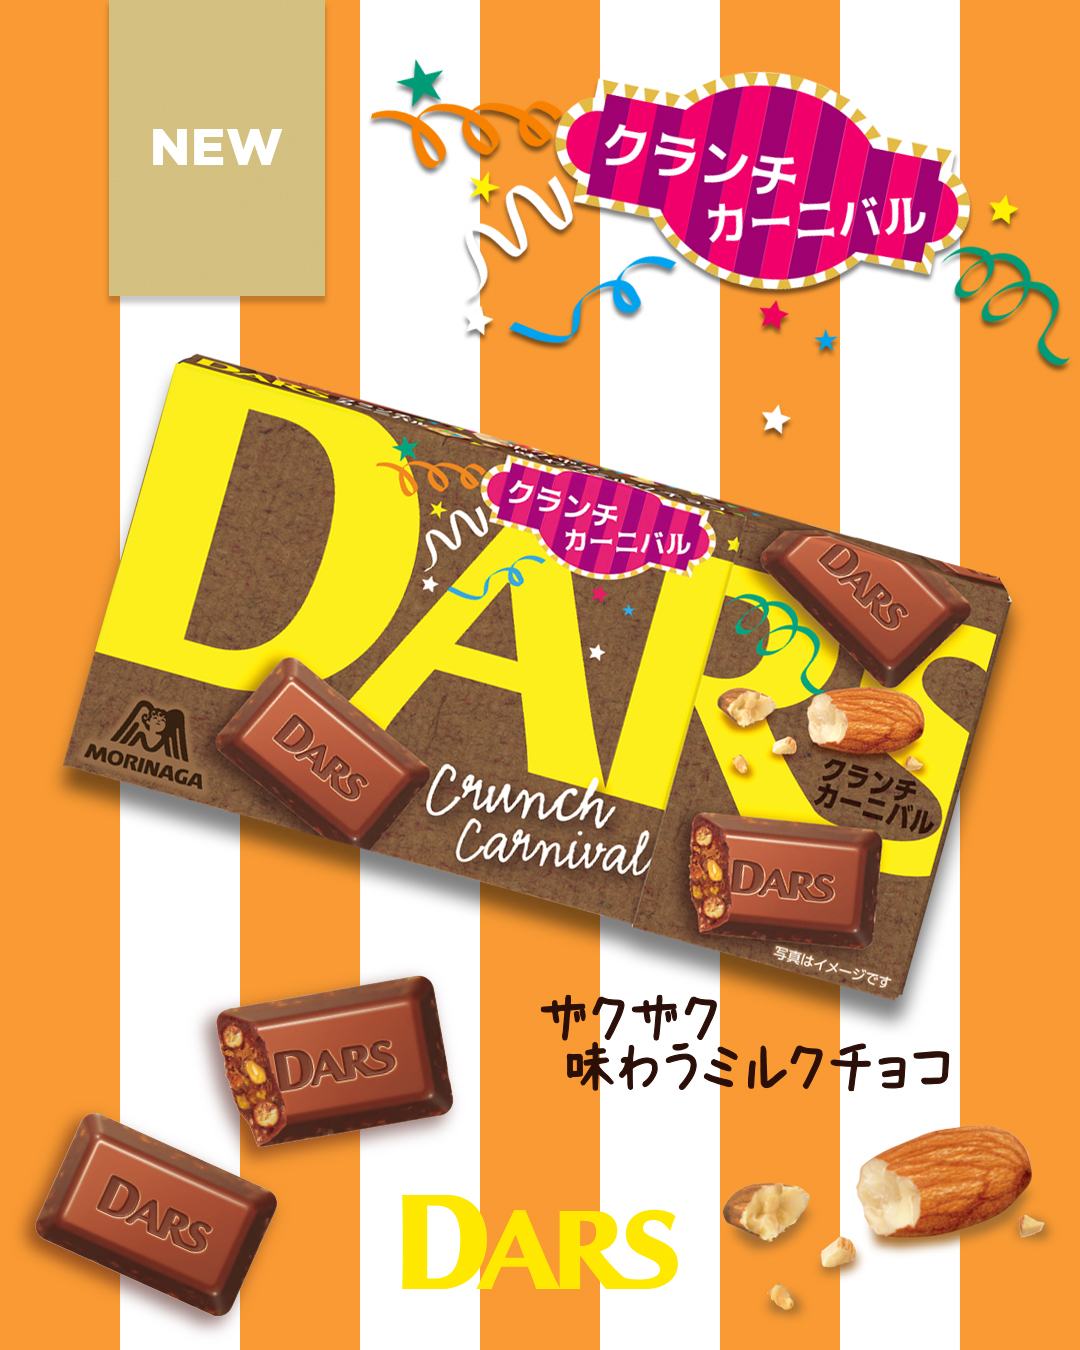 森永チョコレート Morinagachoco Twitter